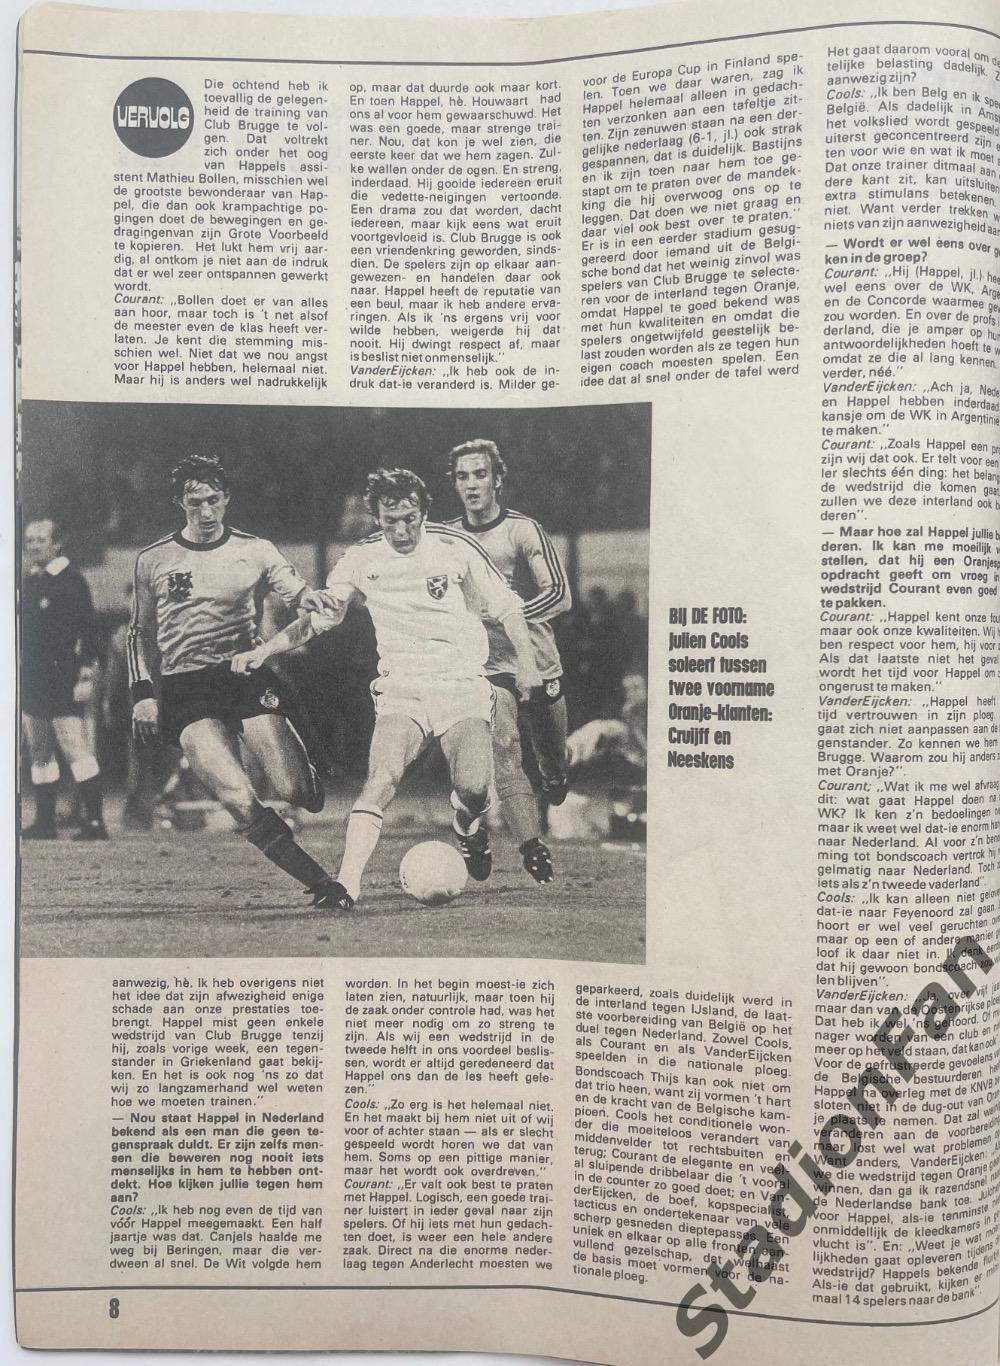 Журнал Voetbal nr.42 - 1977 год. 2